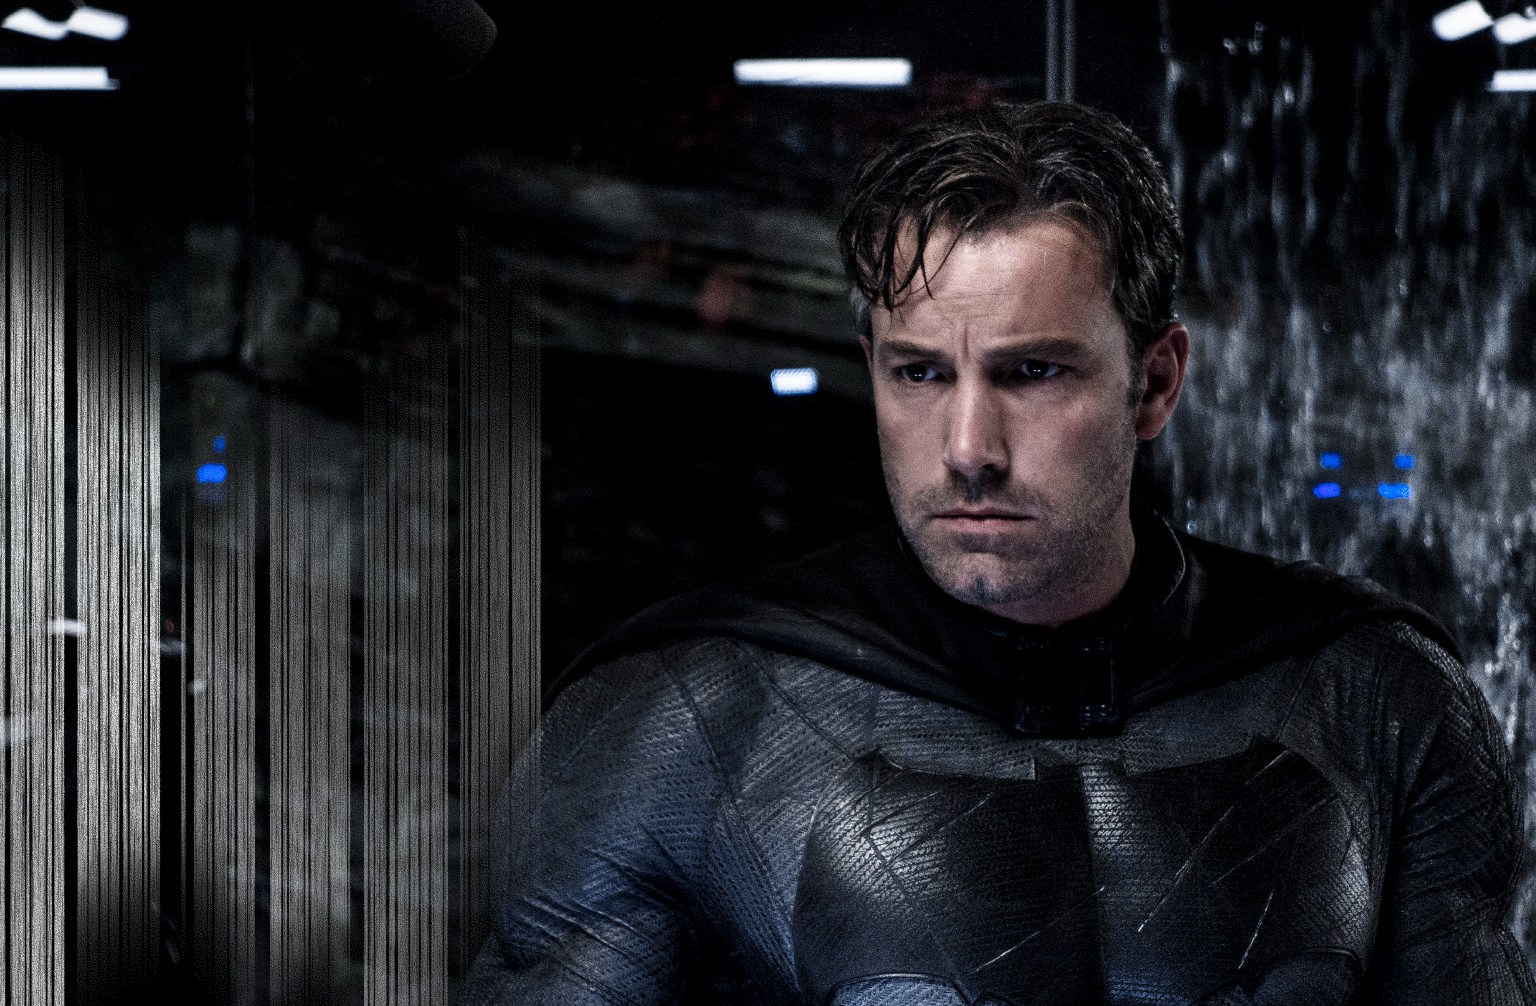  Vem ver o novo uniforme do Batman para o filme “Liga da Justiça”